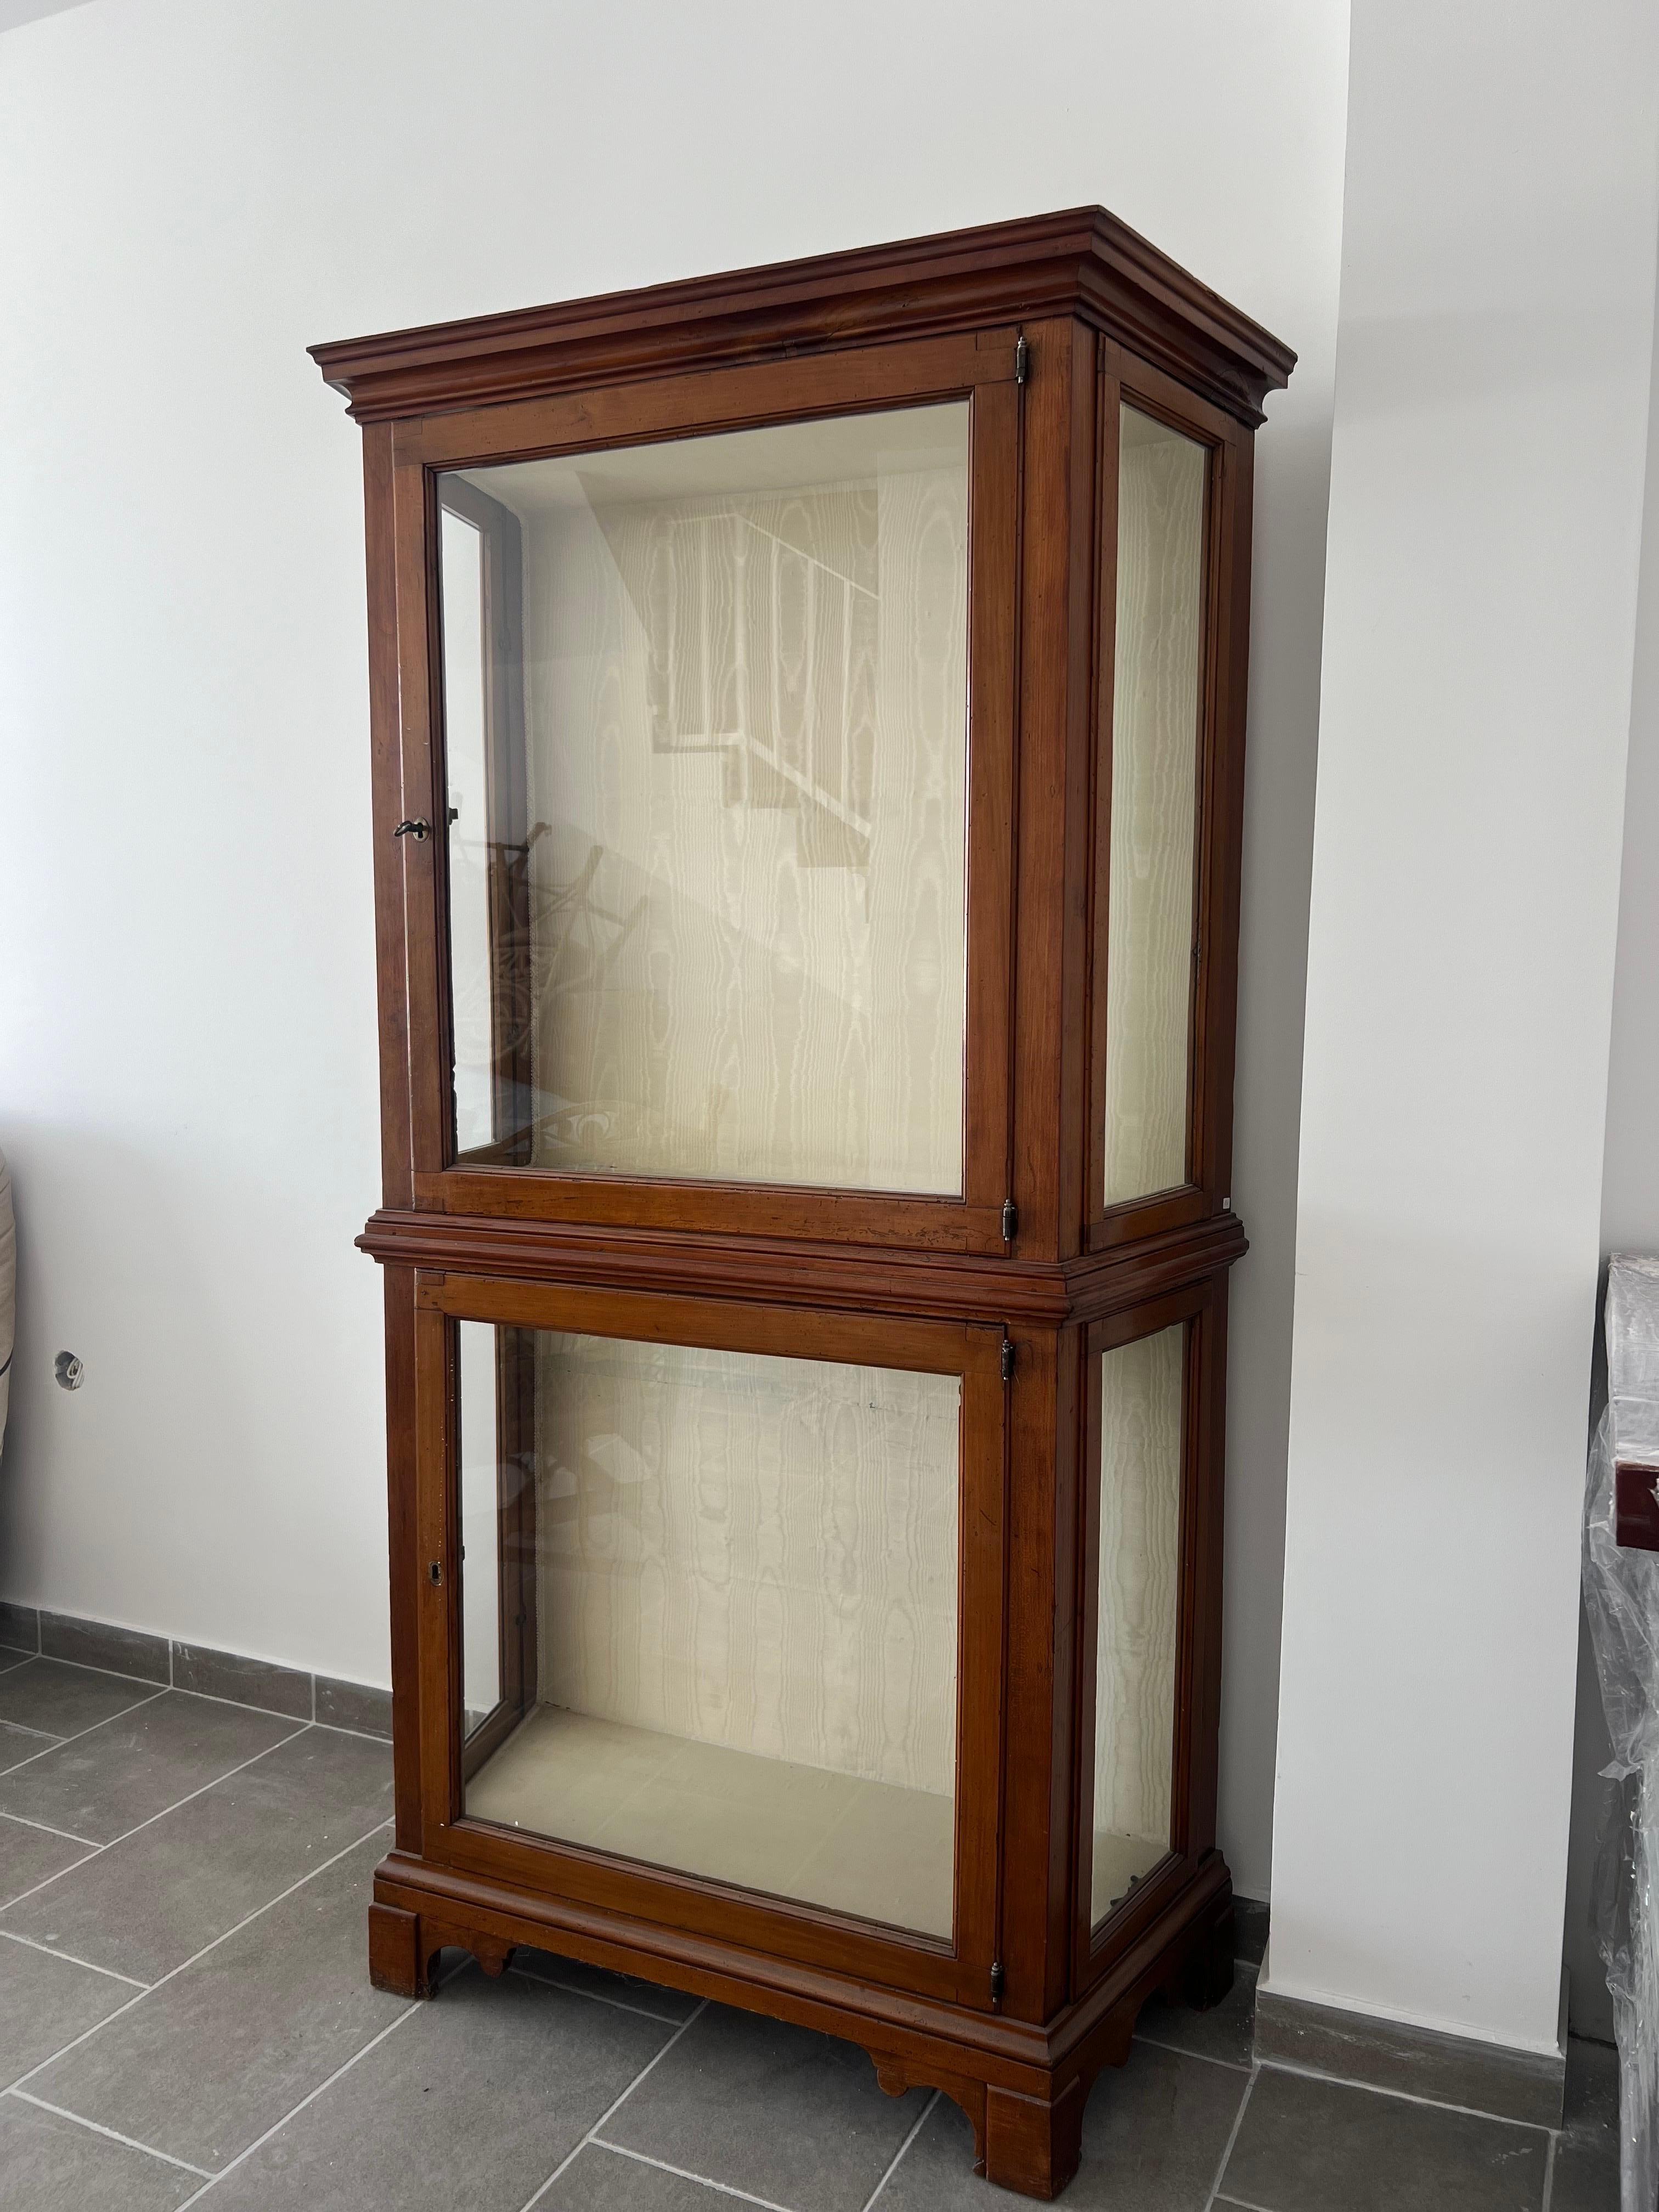 Französische handgeschnitzte Holzvitrine aus dem 19. Jahrhundert im Louis-XV-Stil. Sehr stabile Möbel mit originalen Glastüren und Regalen in sehr authentischem Zustand.
